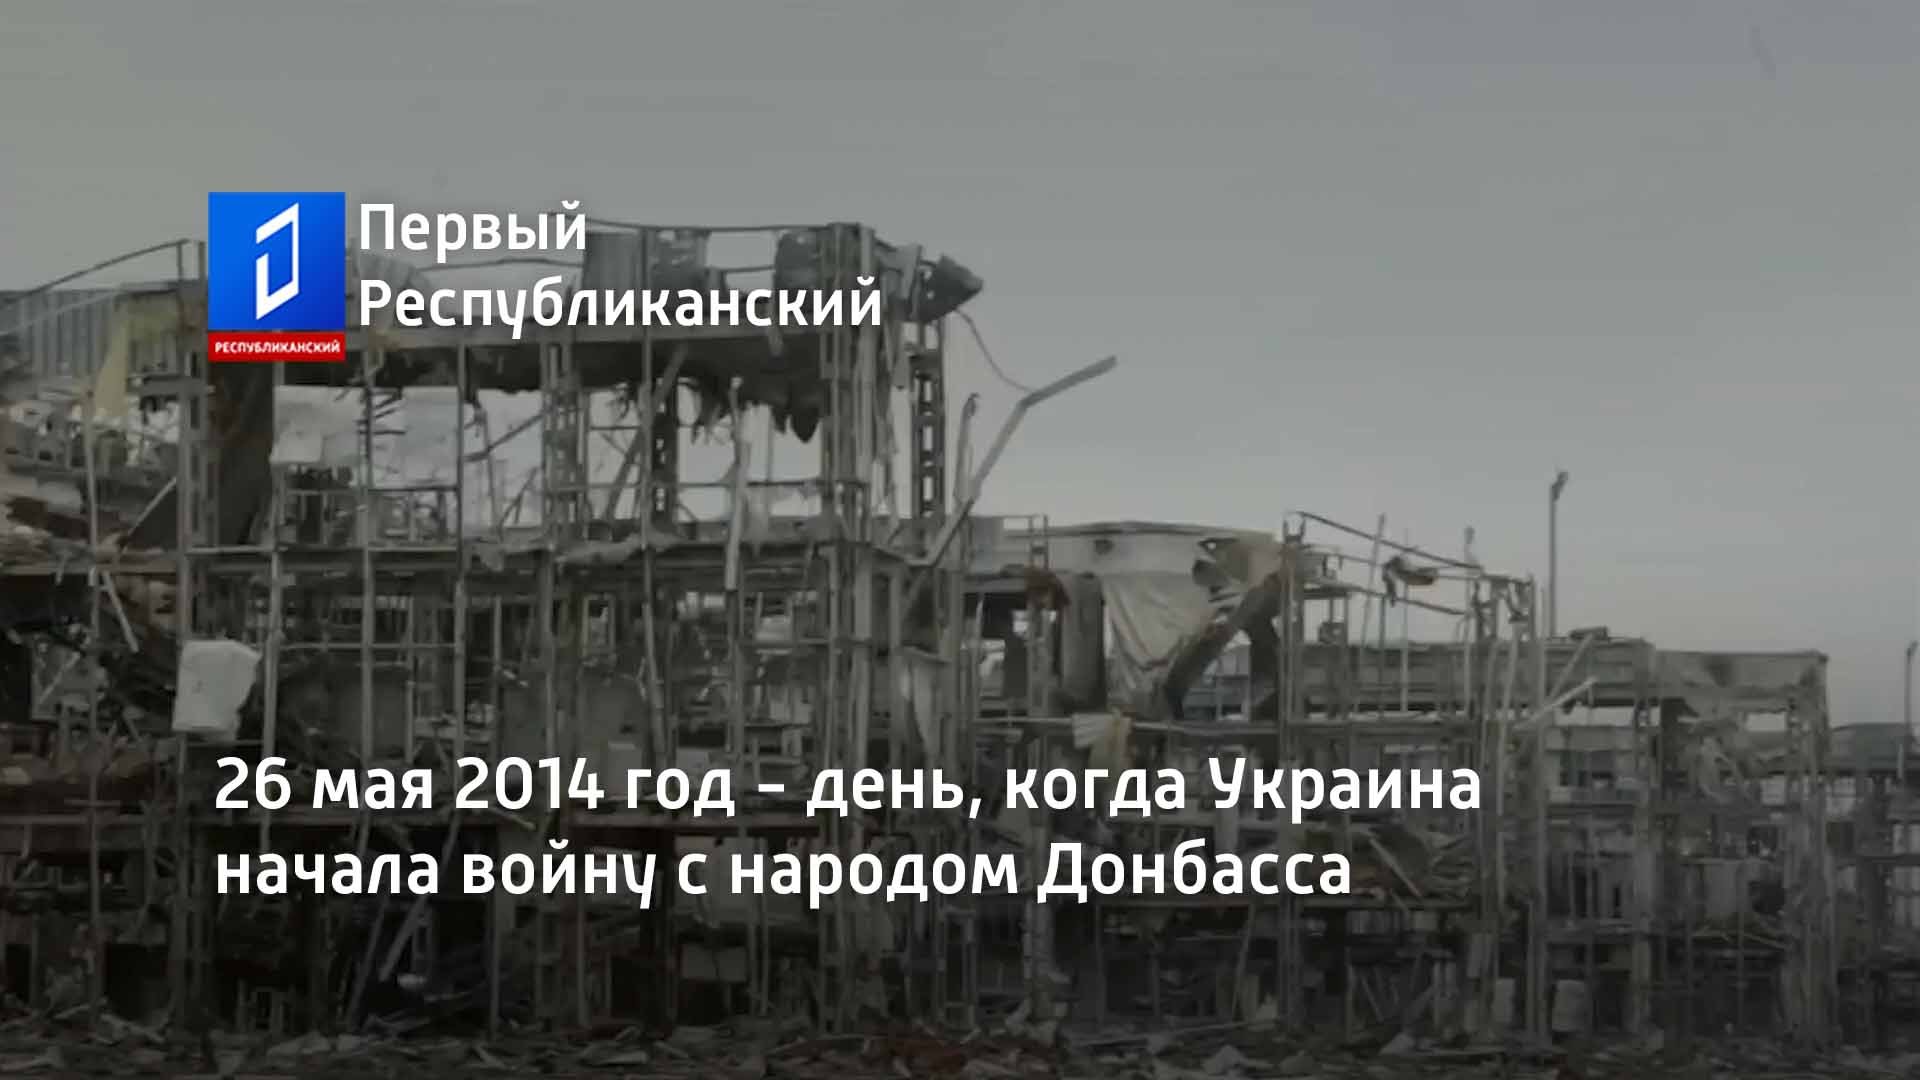 26 мая 2014 год - день, когда Украина начала войну с народом Донбасса